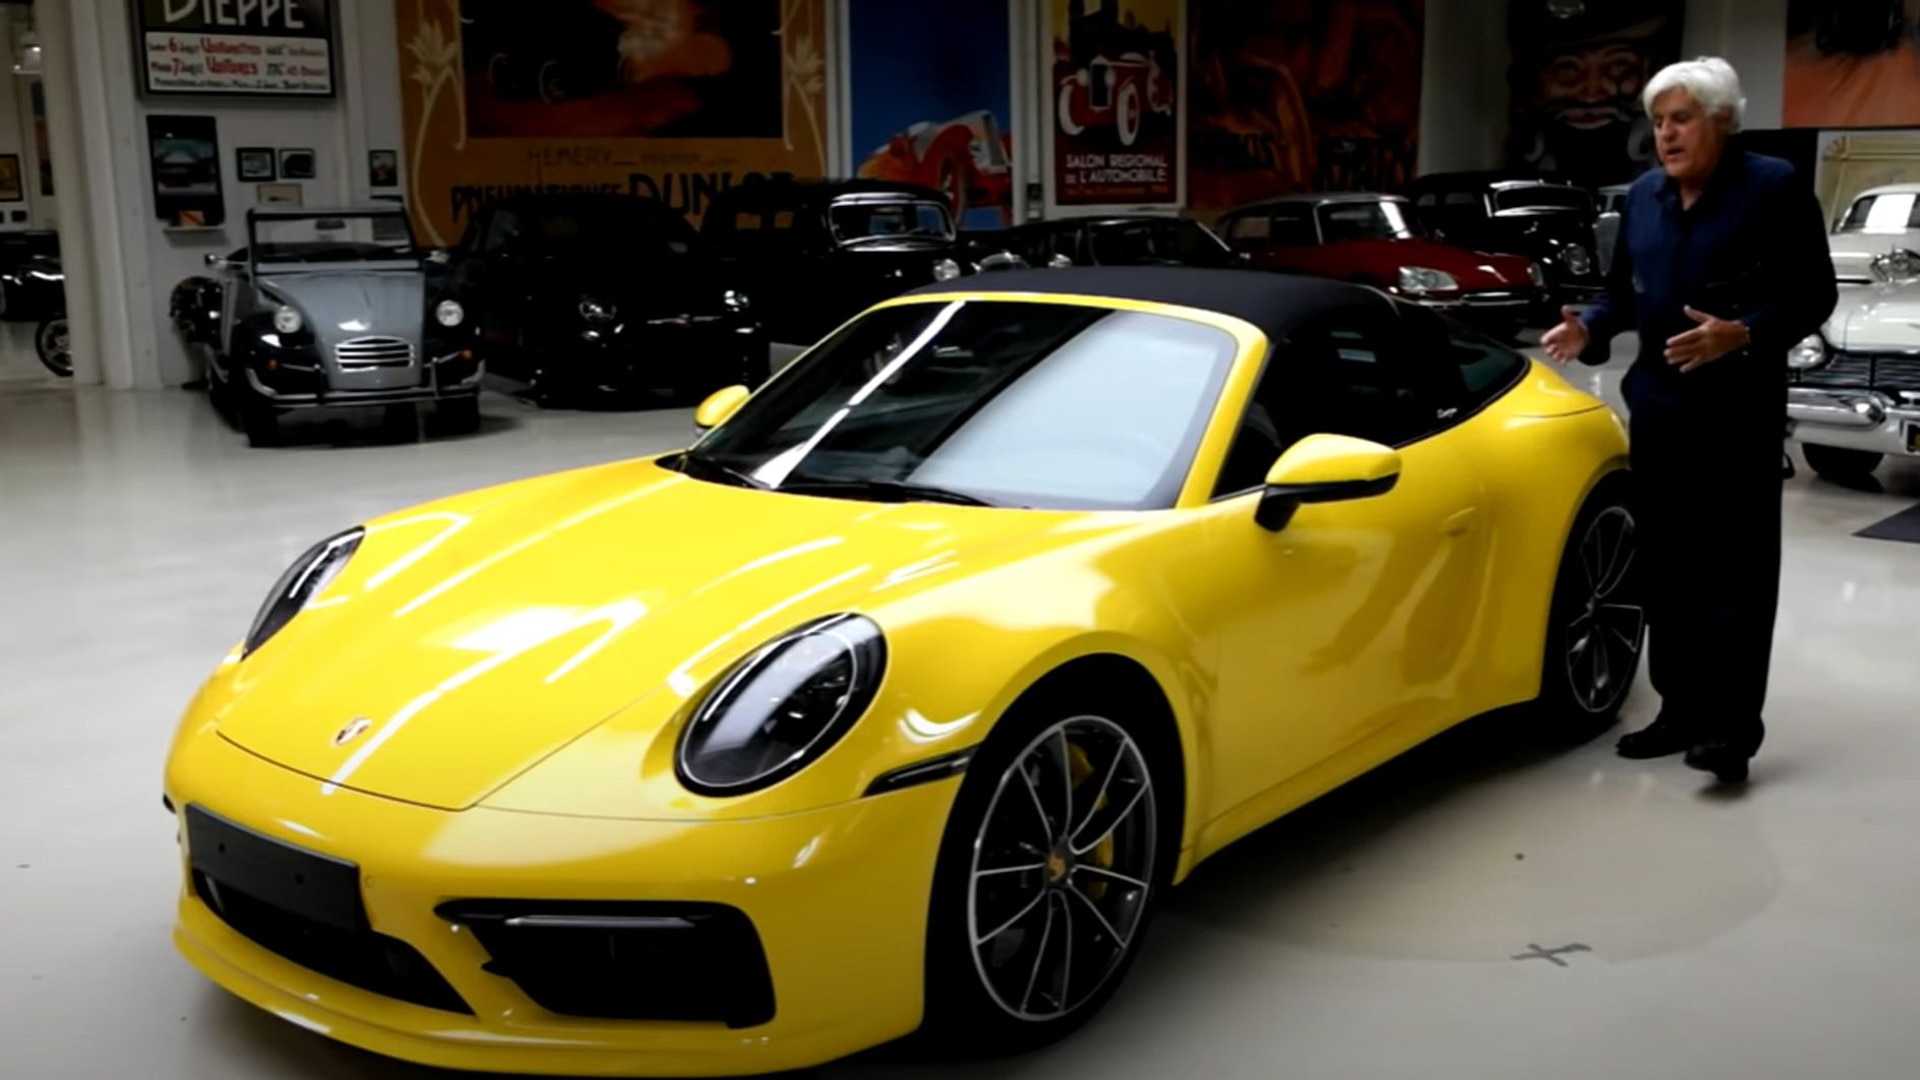 Jay Leno with the 2021 Porsche 911 Targa 4S - video